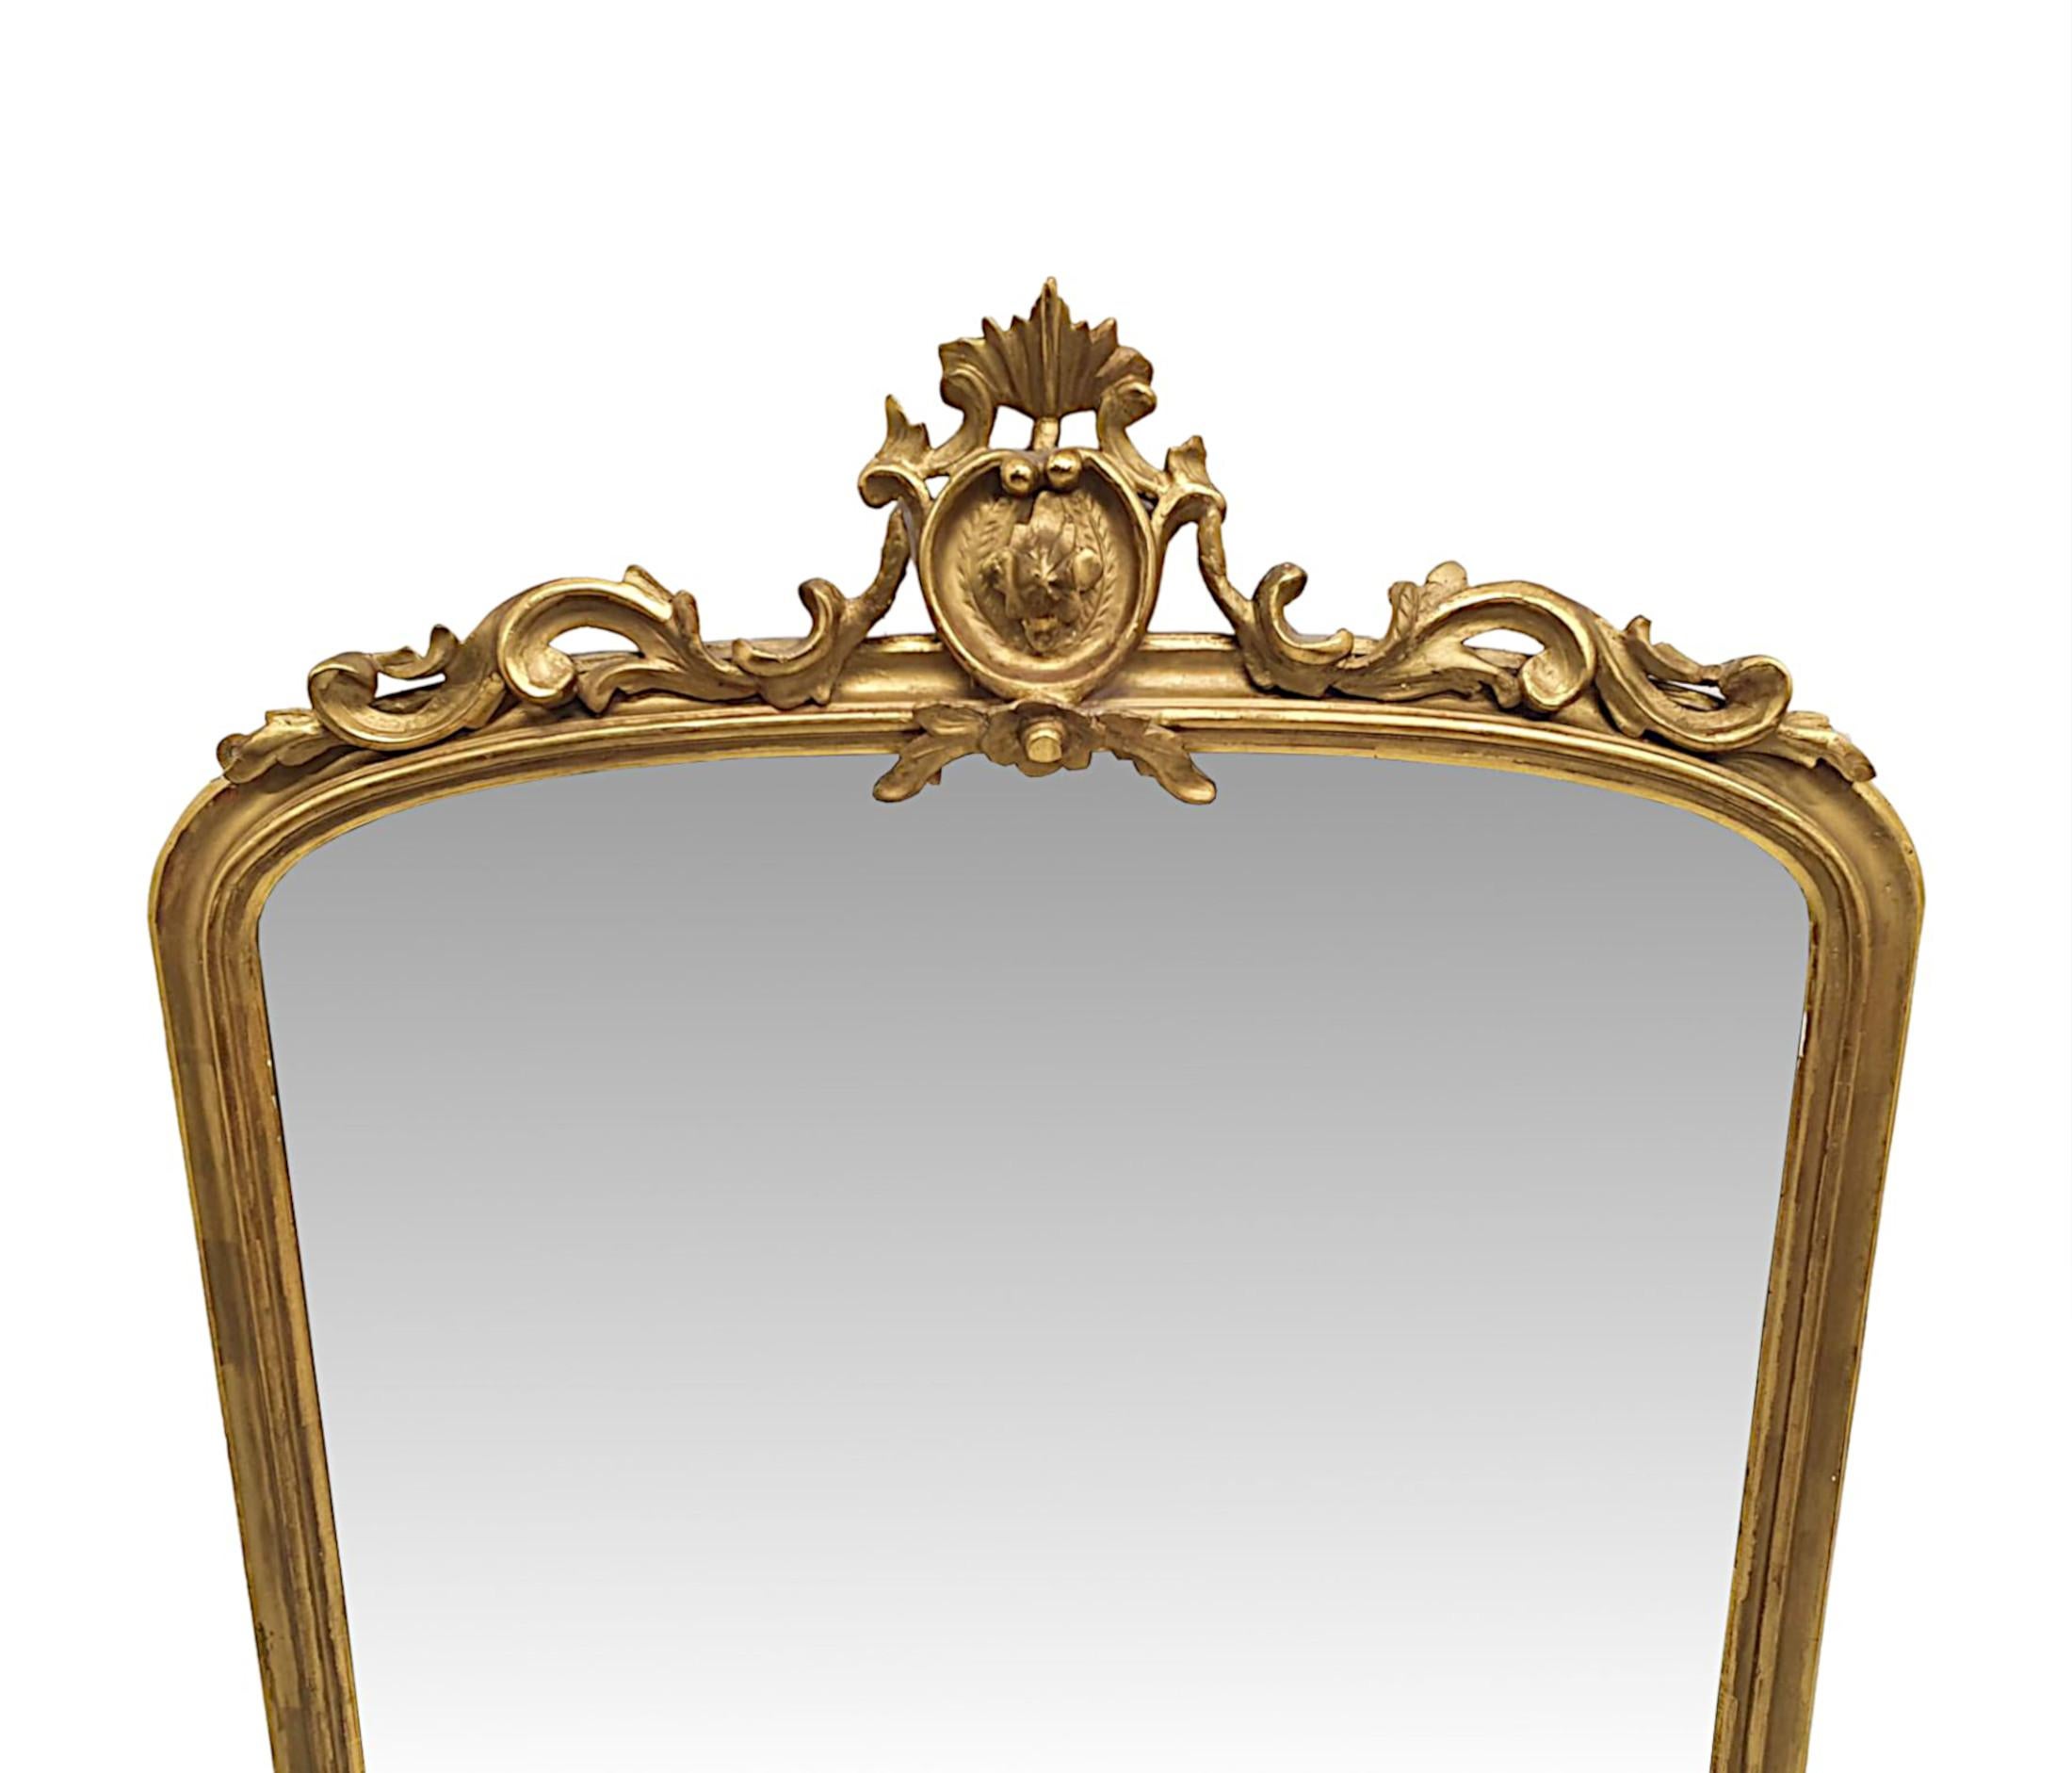 Eine fabelhafte 19. Jahrhundert Vergoldung Mantel Spiegel.  Die Spiegelglasplatte in Bogenform befindet sich in einem wunderschön handgeschnitzten, geformten und durchbrochenen Rahmen aus Goldholz, der mit einer elegant verzierten, mittig